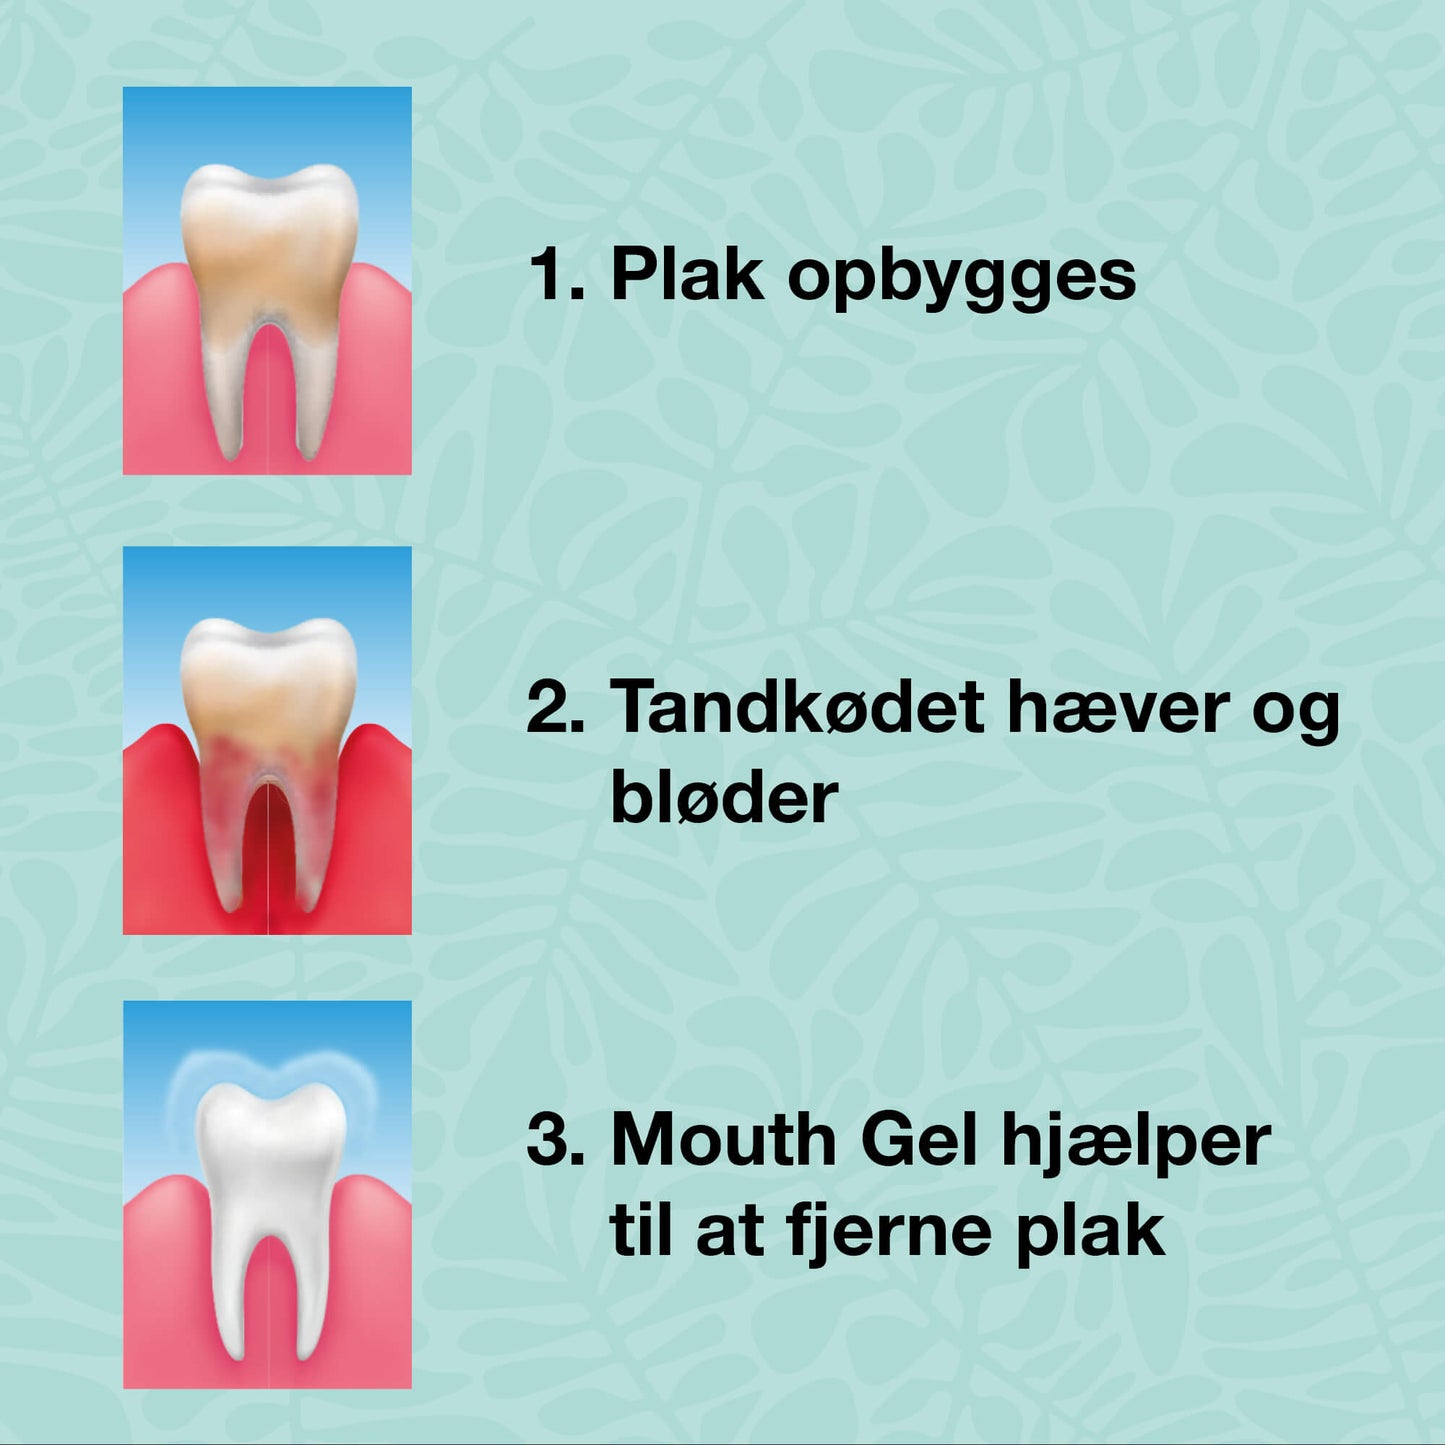 Kit de démarrage – 5 produits bucco-dentaires - Kit de démarrage pour une bonne hygiène buccale et le traitement des maladies parodontales et des mycoses